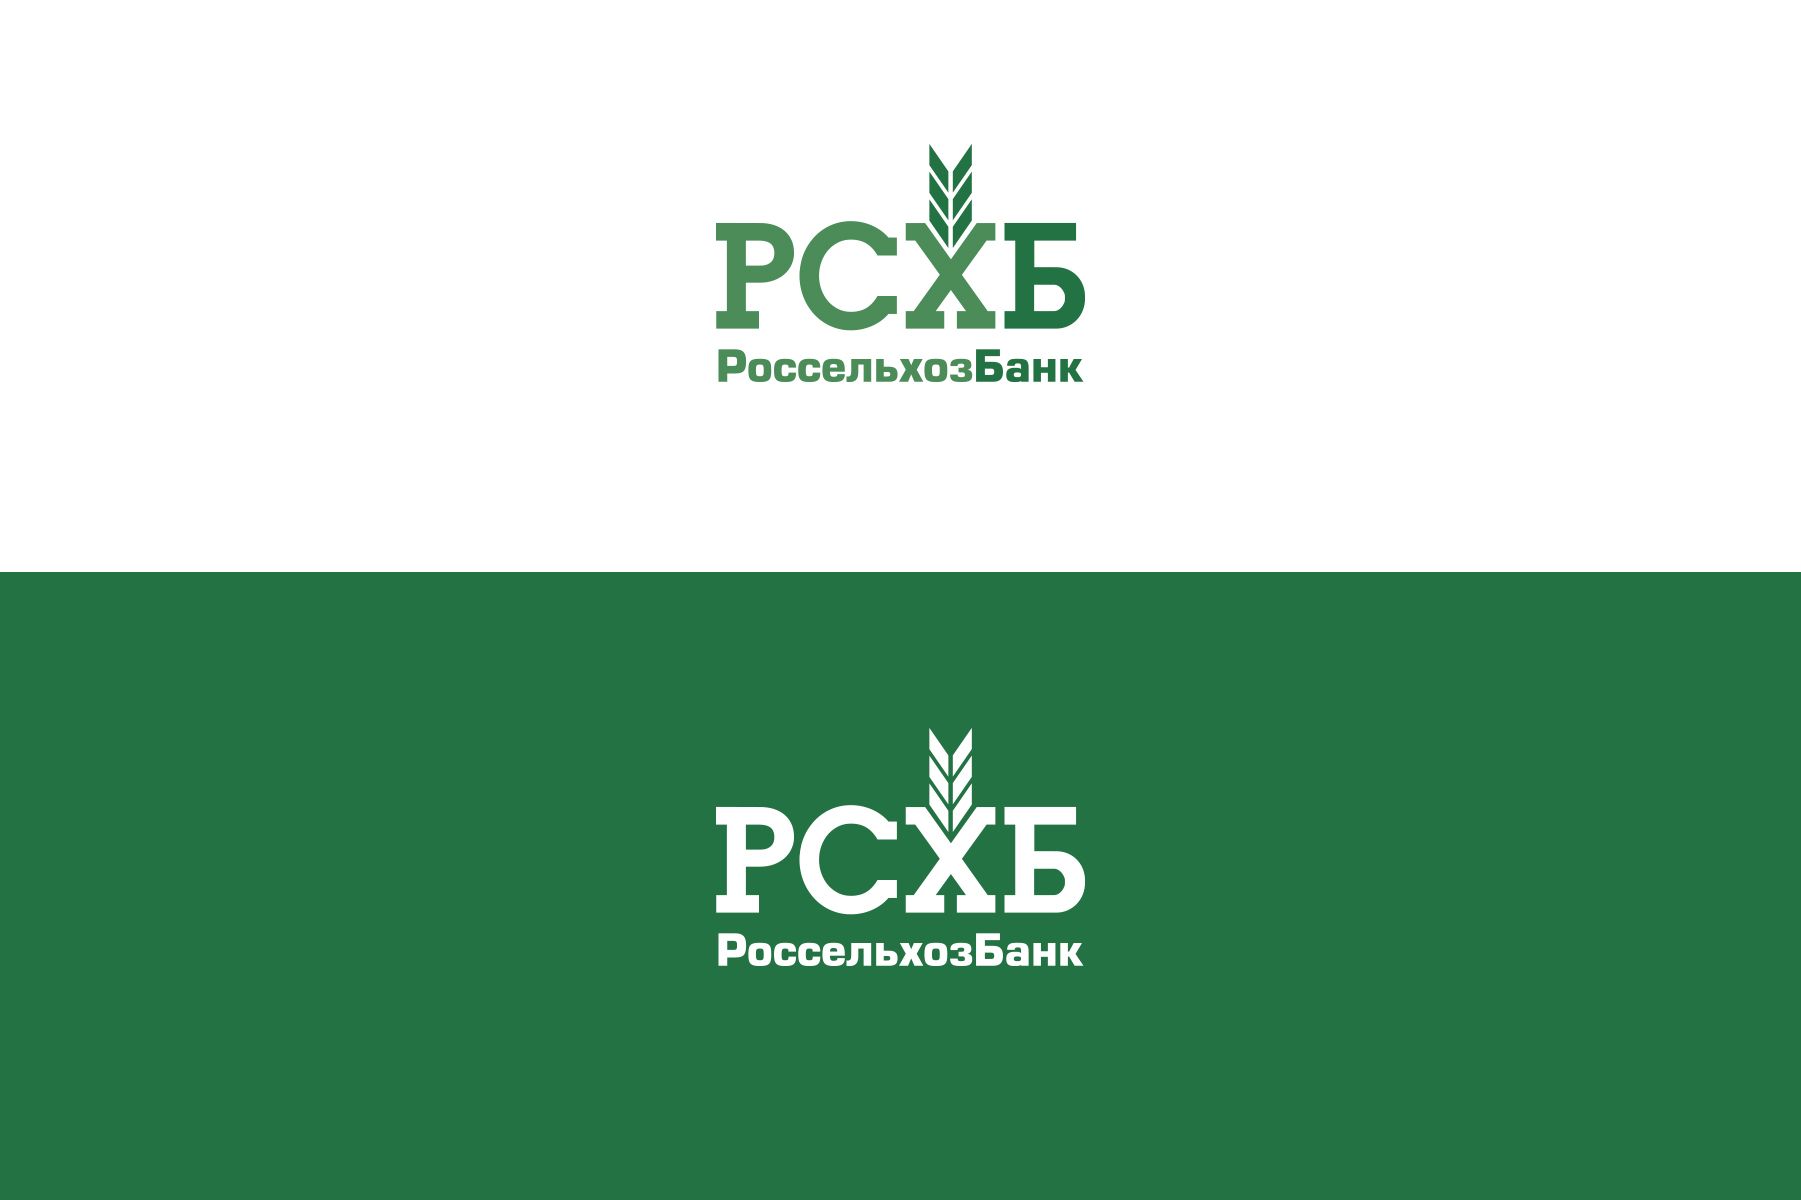 Логотип для Россельхозбанка - дизайнер U4po4mak